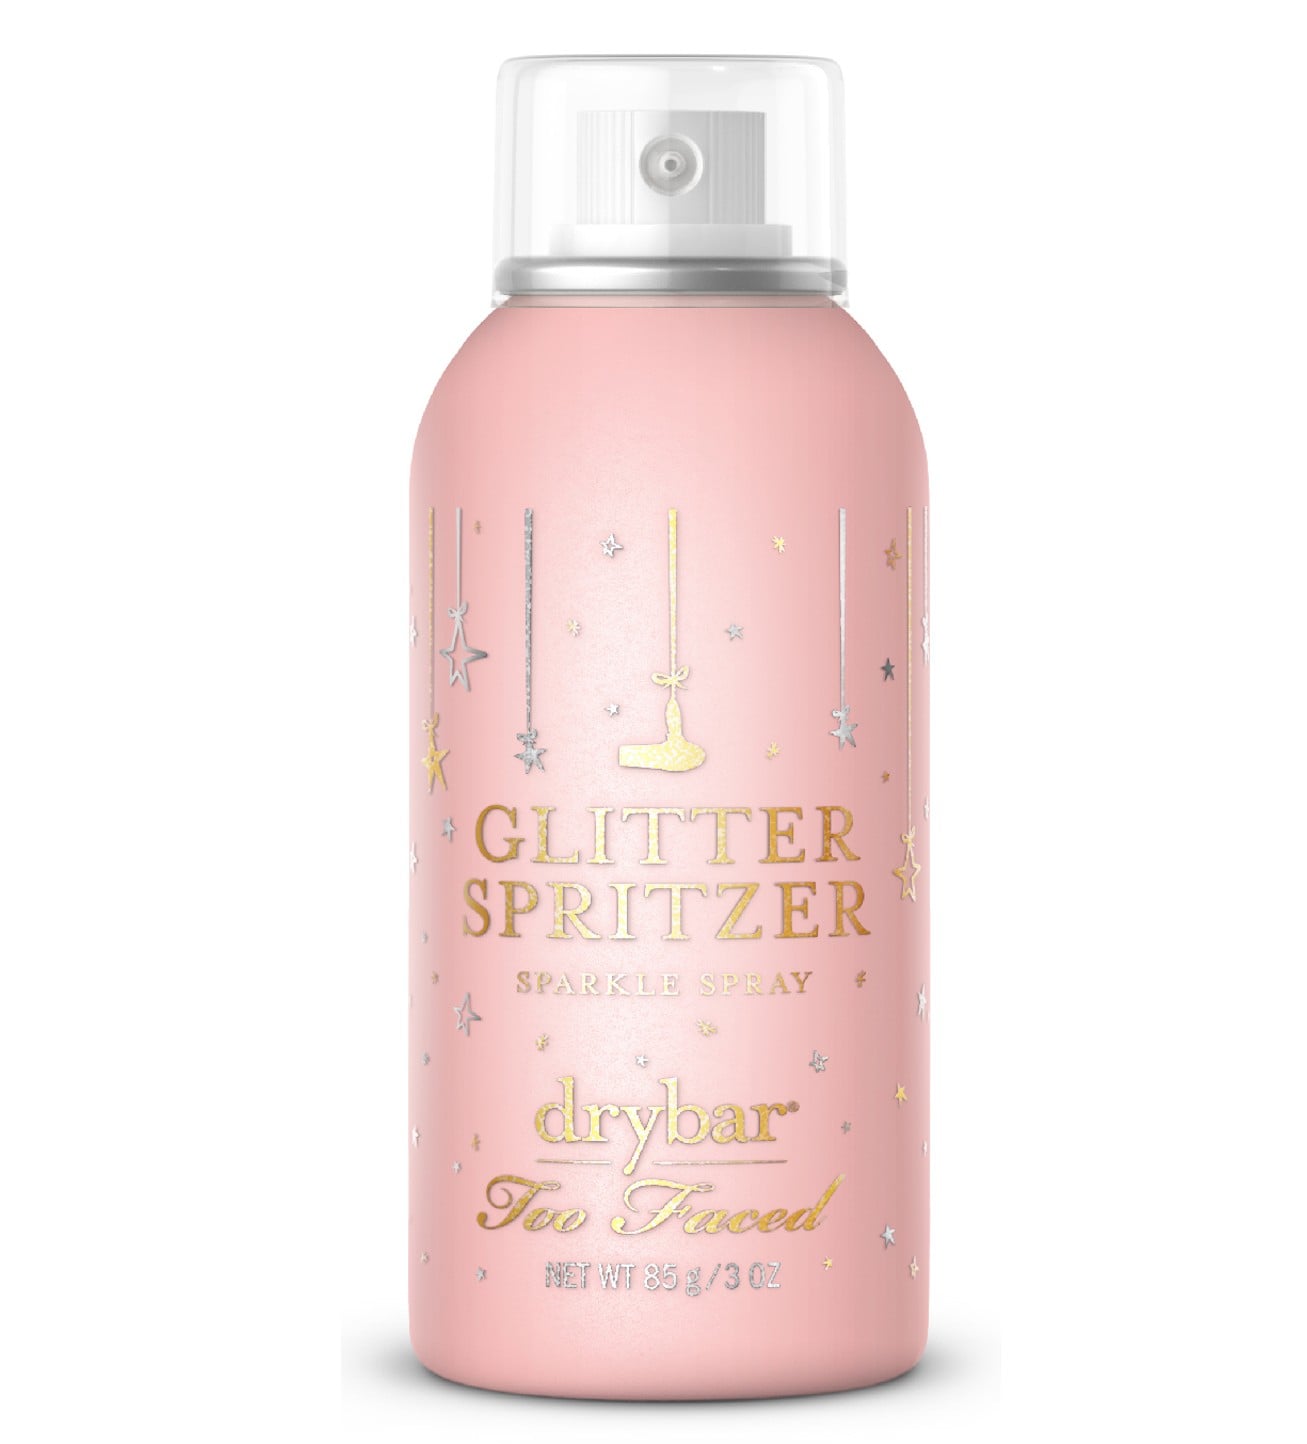 Drybar x Too Faced Glitter Spritzer Review